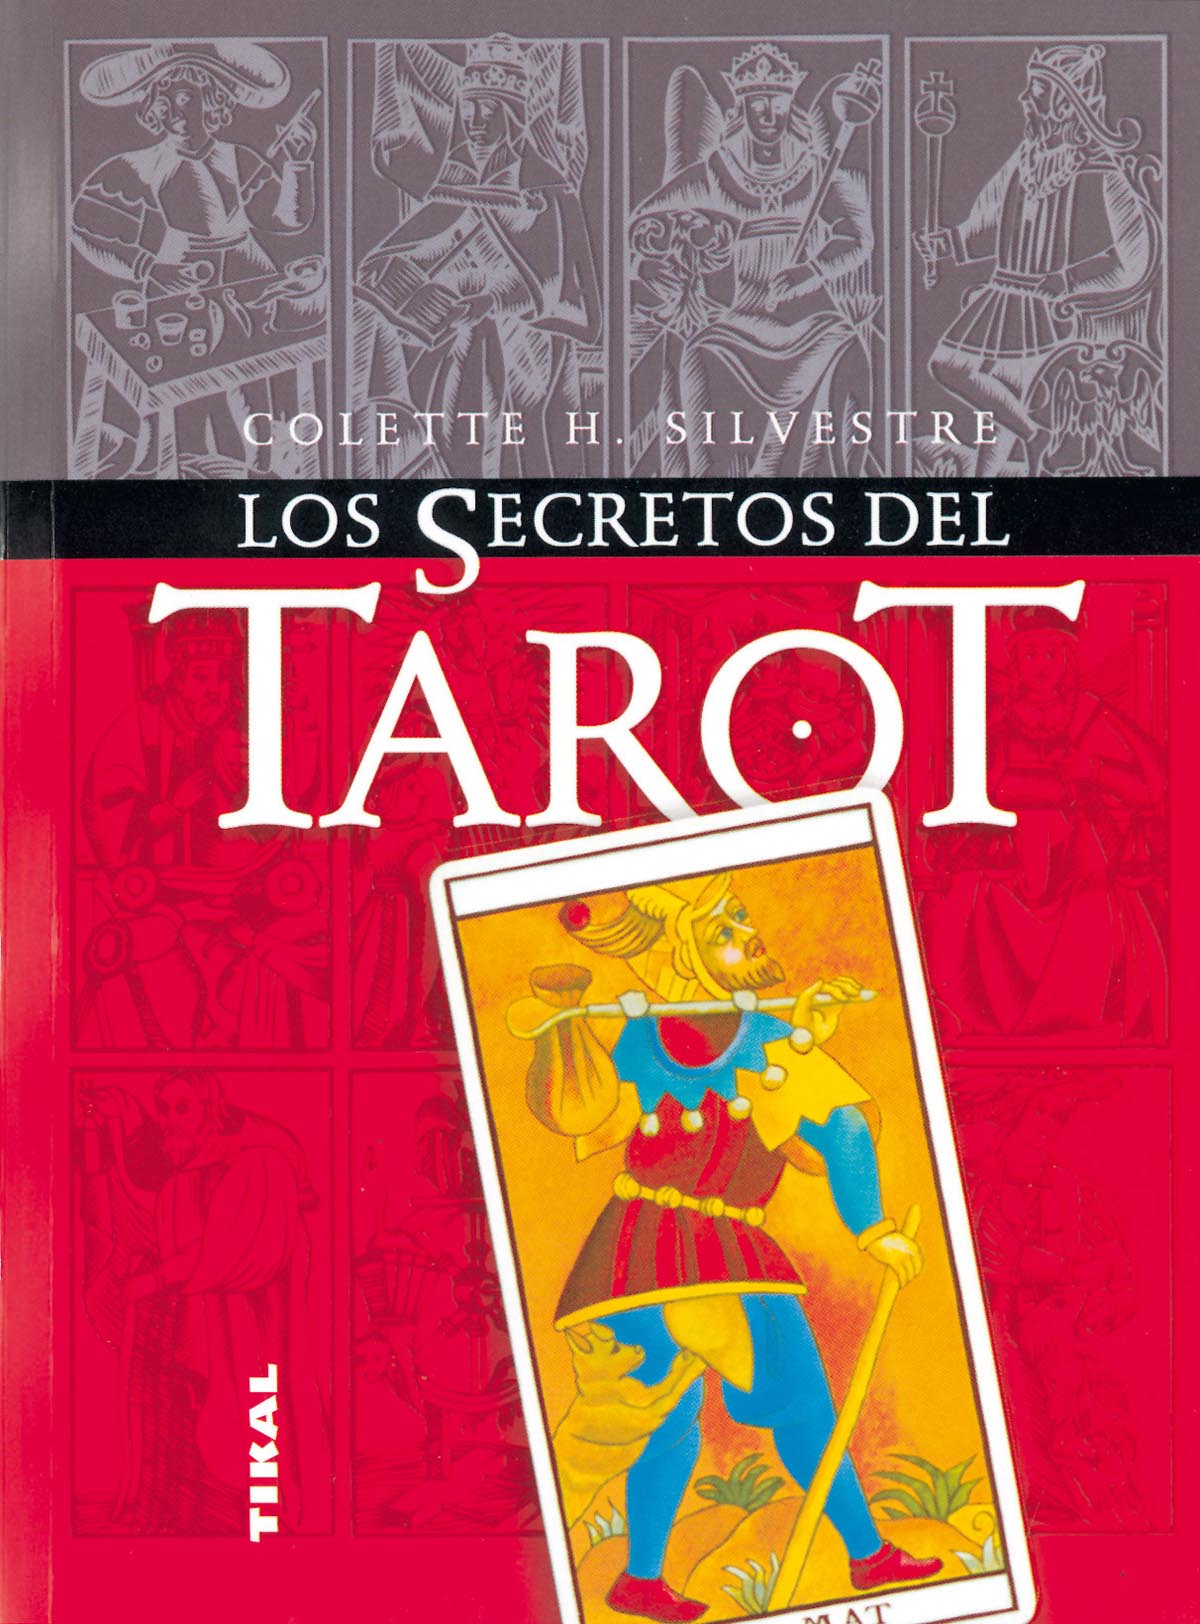 Los secretos del tarot